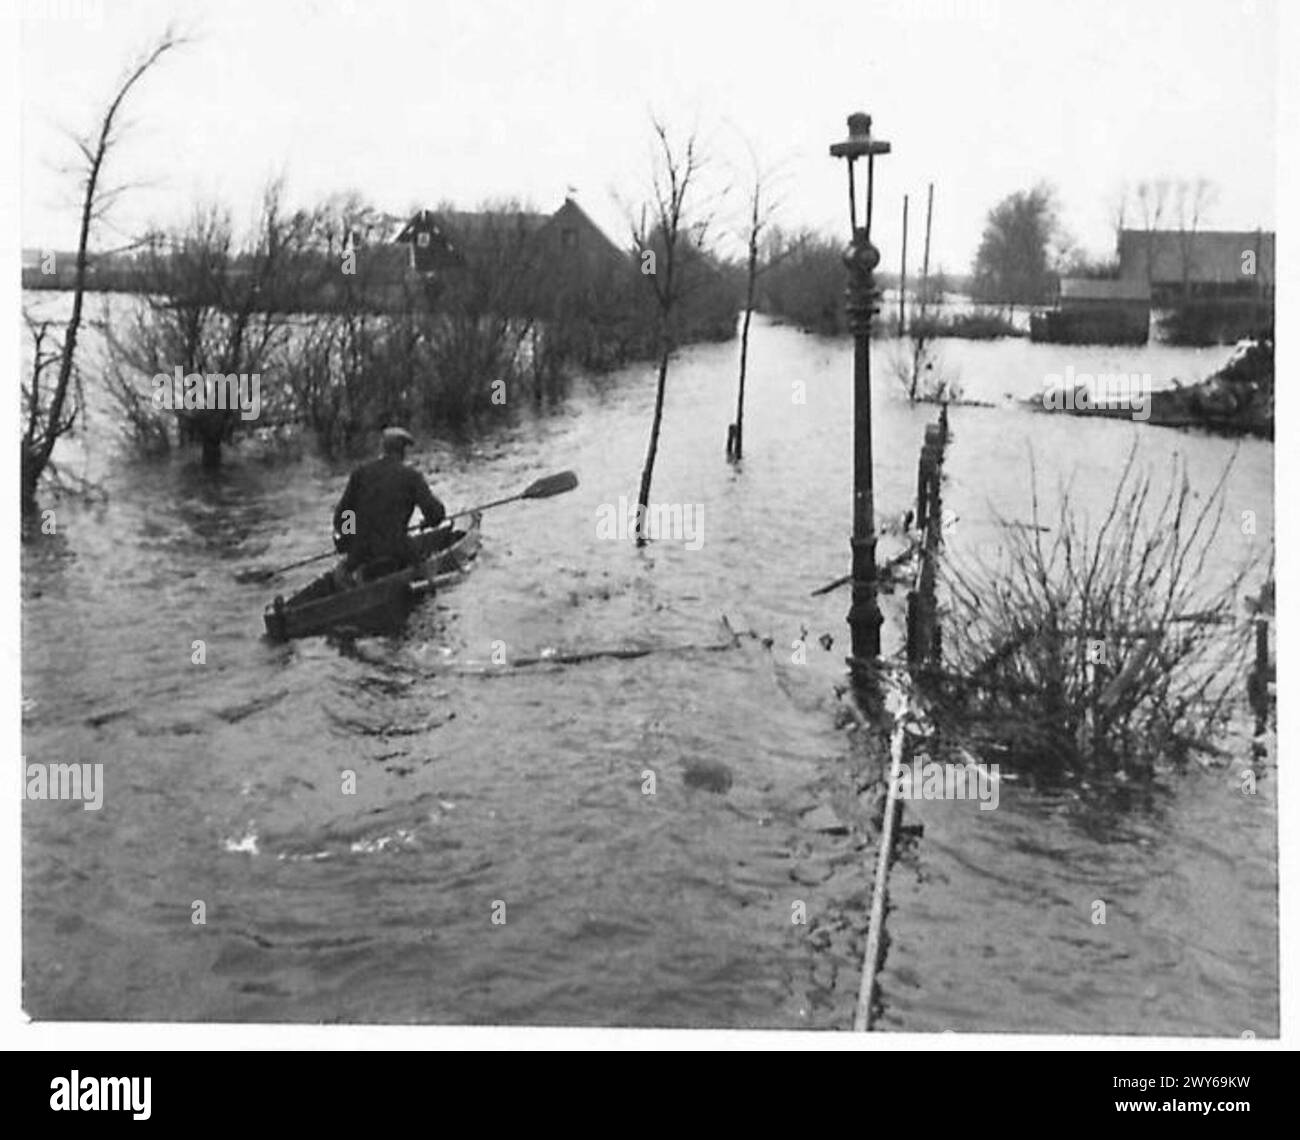 L'ISOLA ALLAGATA DI WALCHEREN - canoa che regna su quella che una volta era una strada. , British Army, 21st Army Group Foto Stock